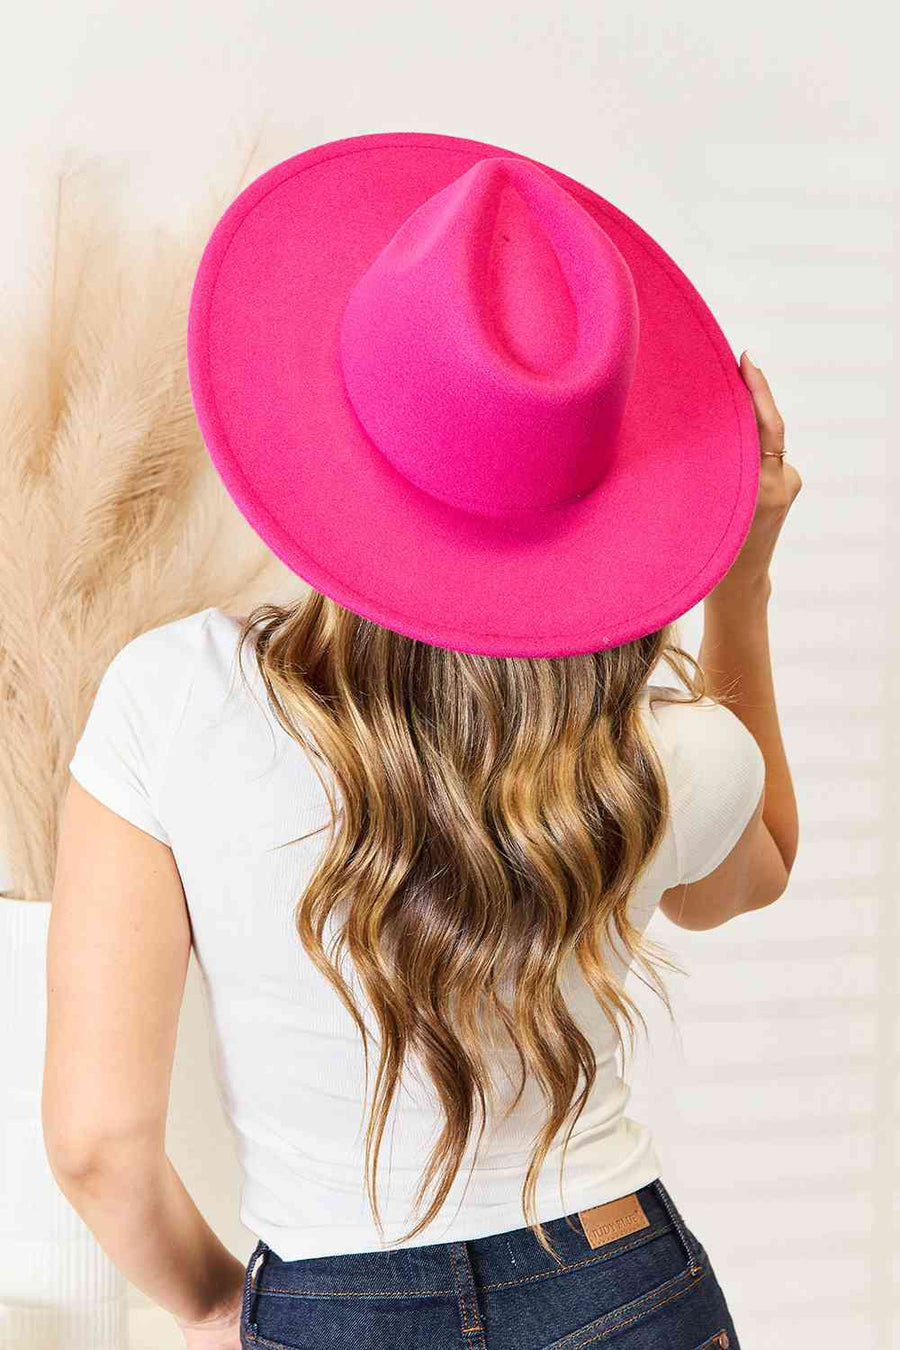 Fame, lameda äärega Fedora moodne müts-trendsi-kuum roosa-ühesuurus-satiinboutique